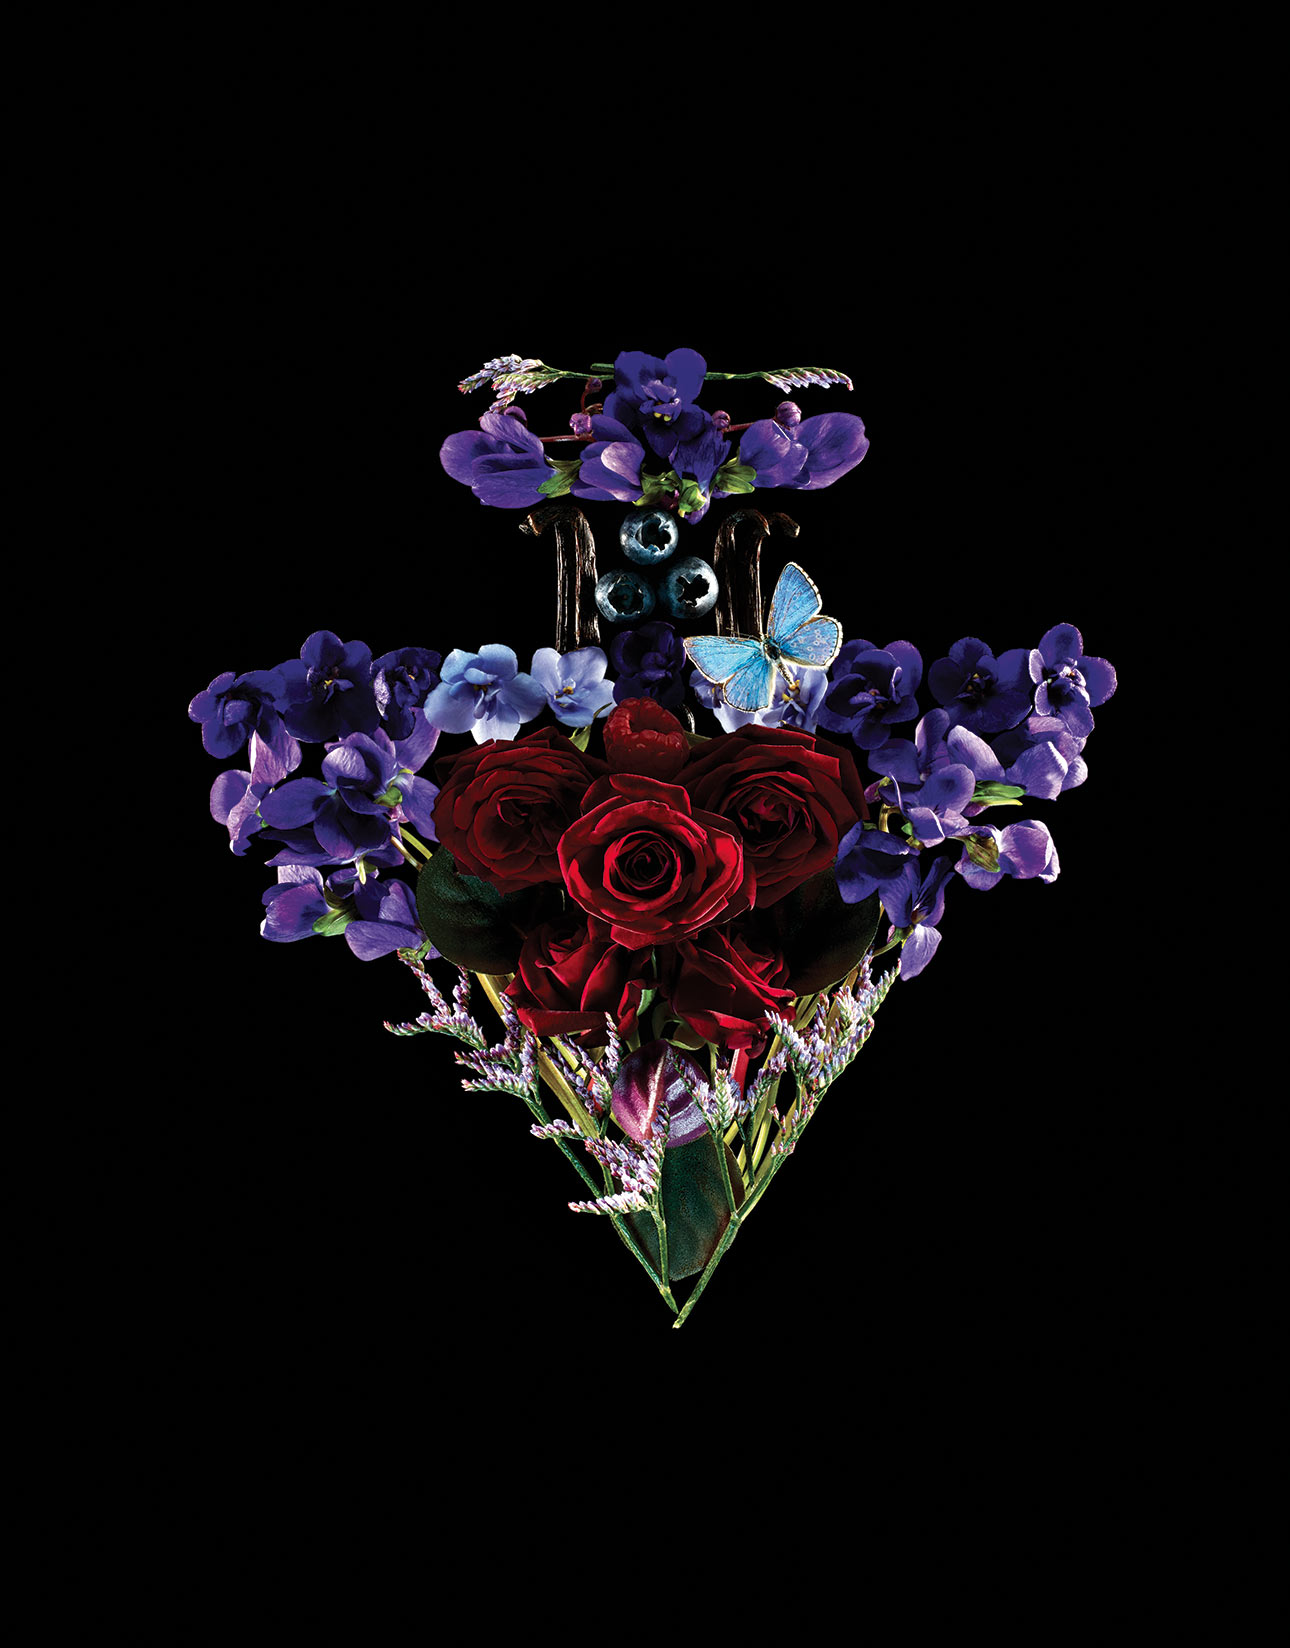 8helmut-stelzenberger-luxury-flowers-112117- (3).jpg